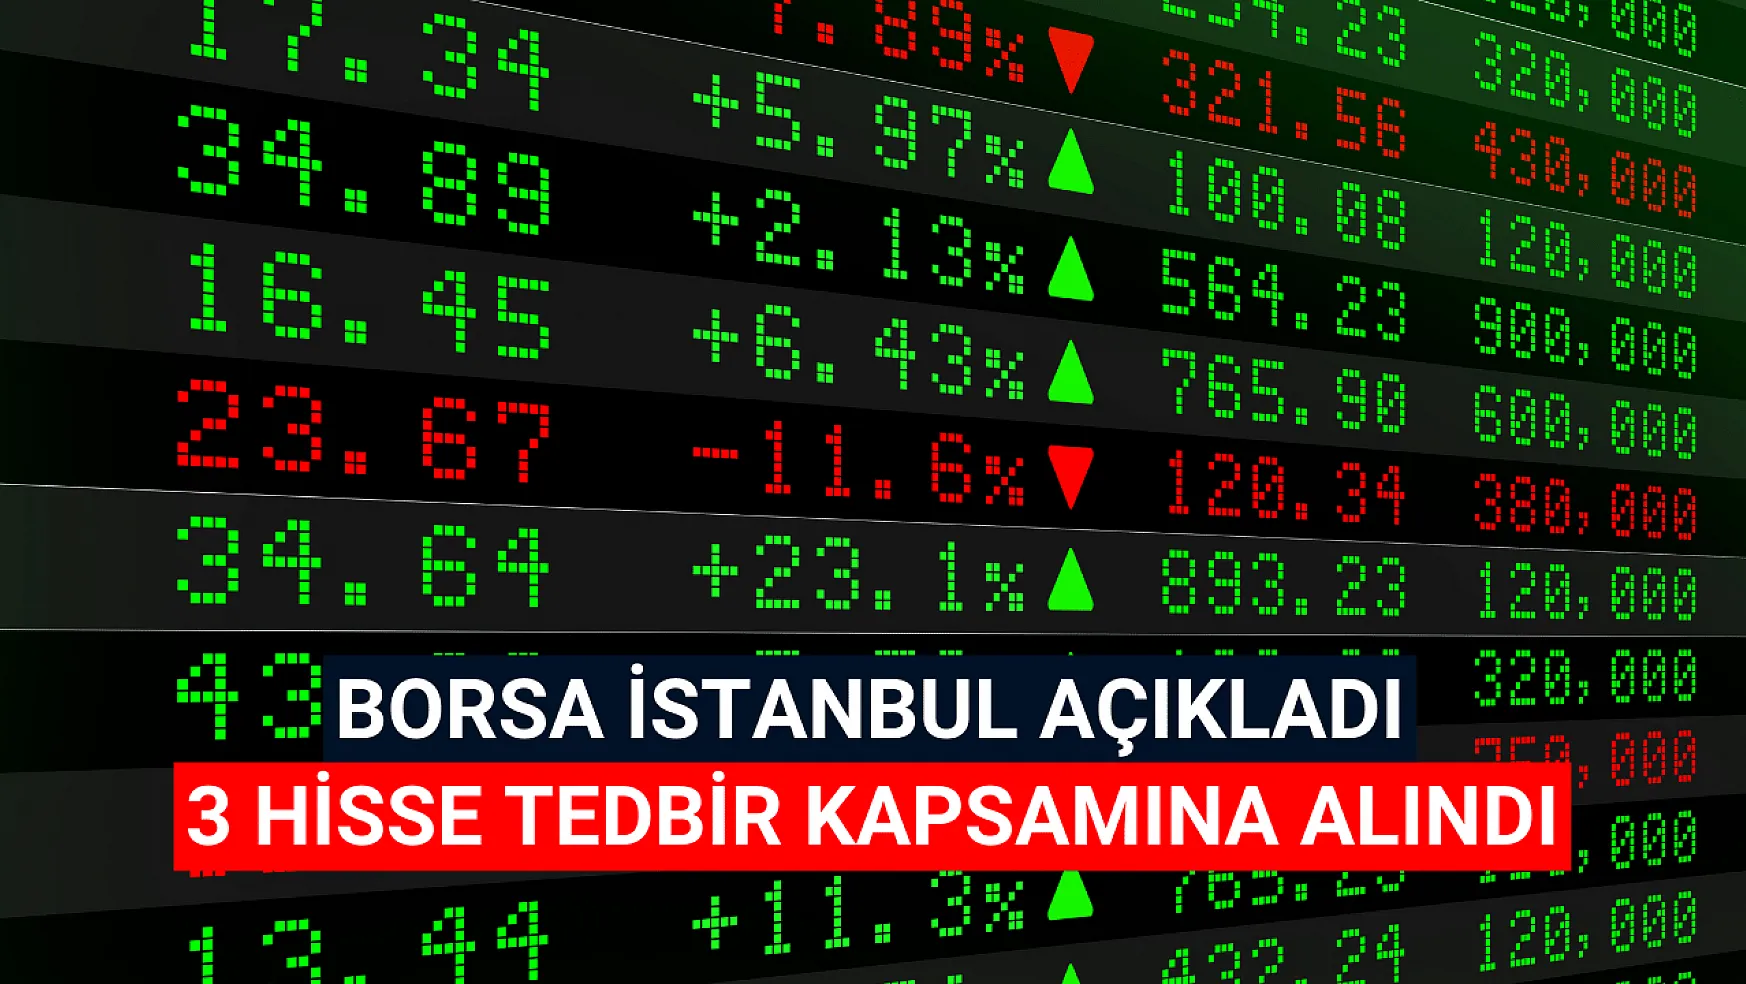 Borsa İstanbul 3 hisseyi tedbir kapsamına aldı!